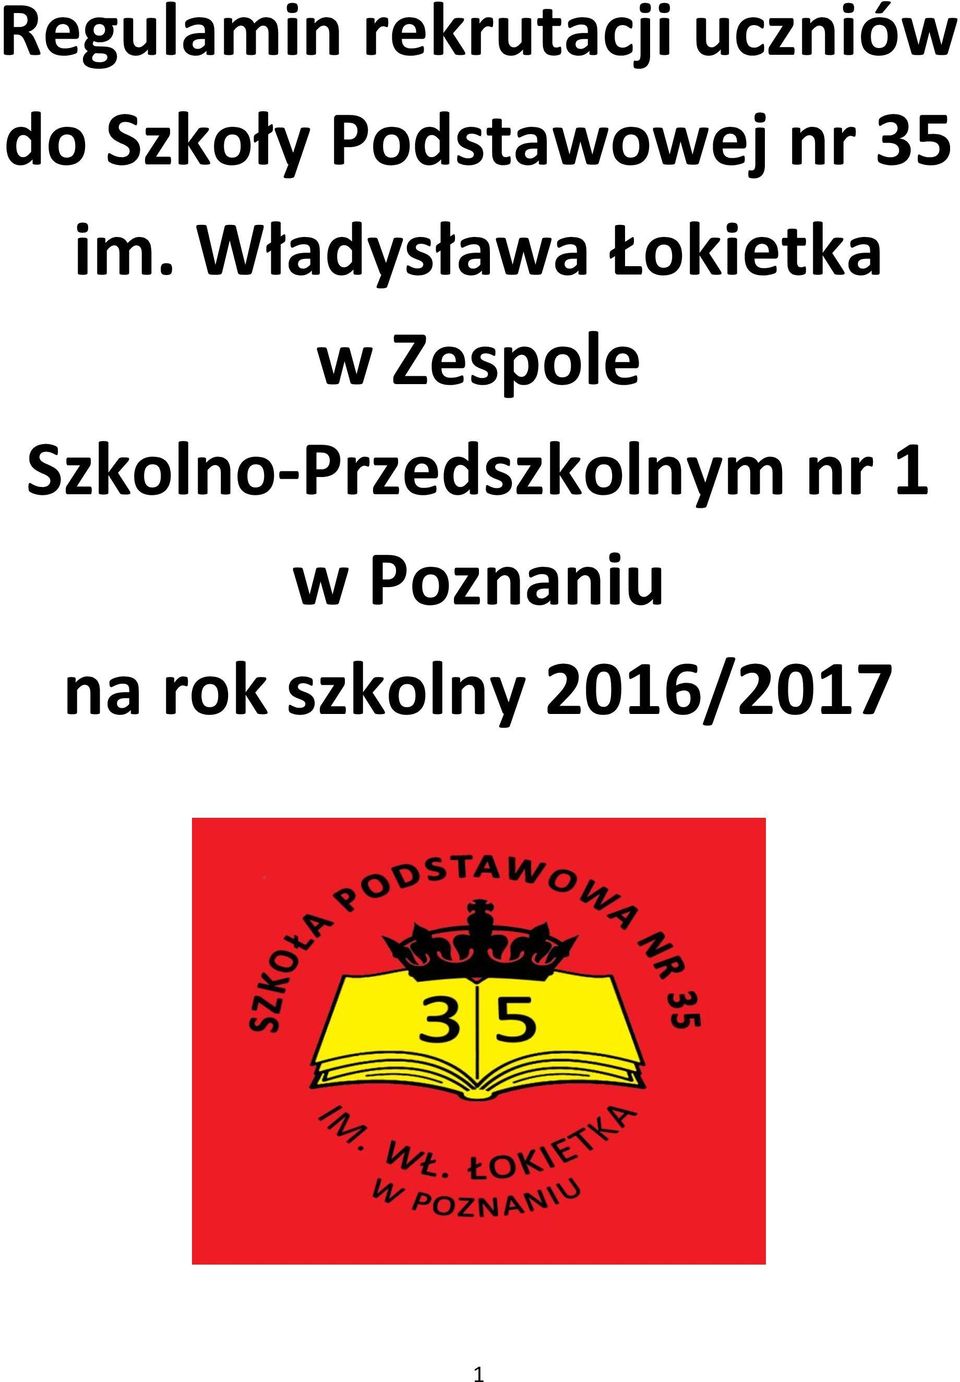 Władysława Łokietka w Zespole